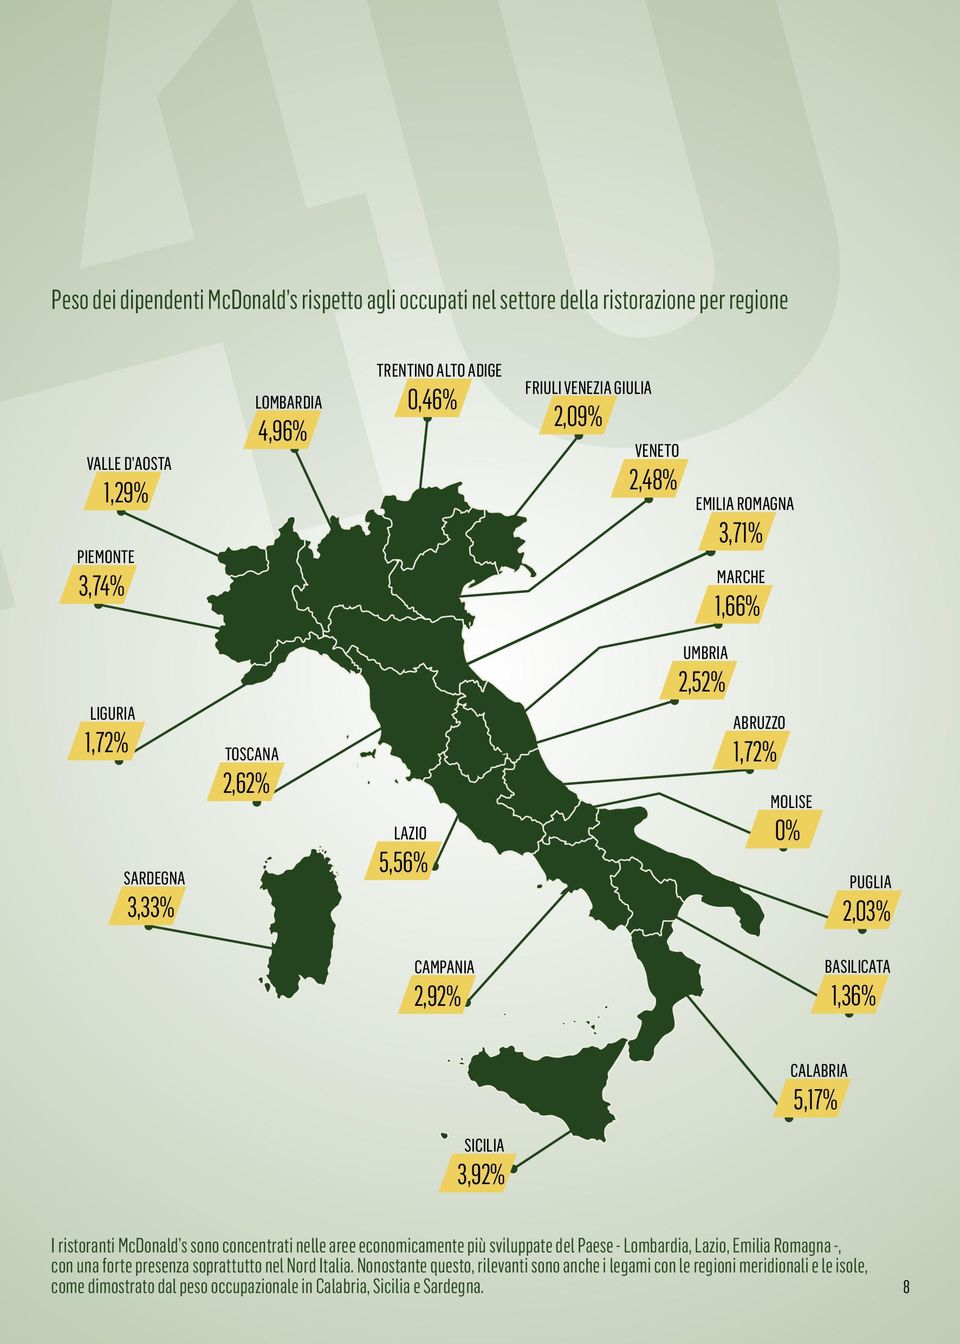 BASILICATA 1,36% CALABRIA 5,17% SICILIA 3,92% I ristoranti McDonald s sono concentrati nelle aree economicamente più sviluppate del Paese - Lombardia, Lazio, Emilia Romagna -, con una forte